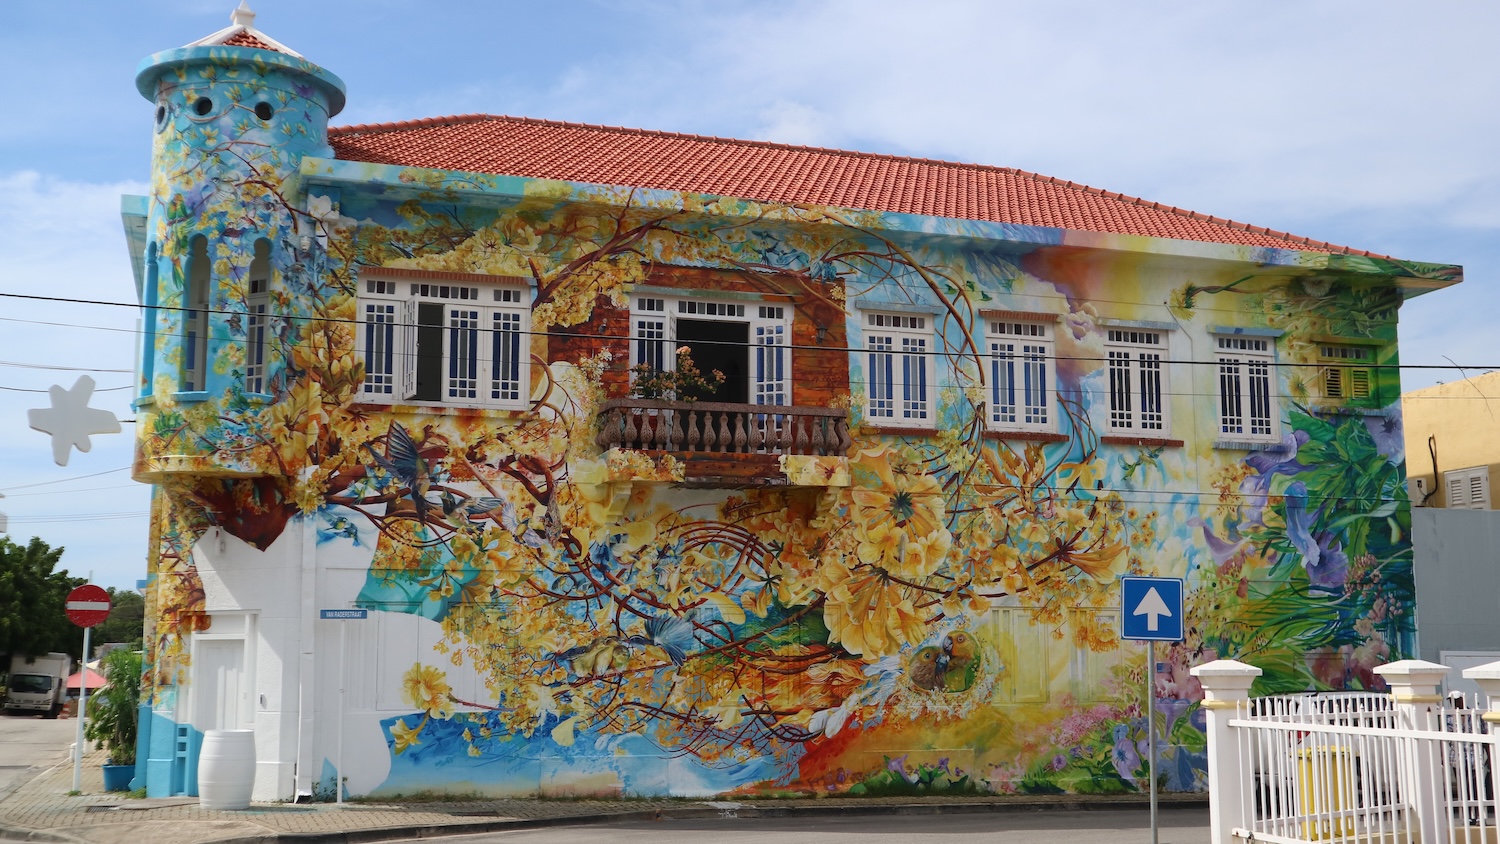 Maak een fietstocht en ontdek de mooiste street art van Curaçao.